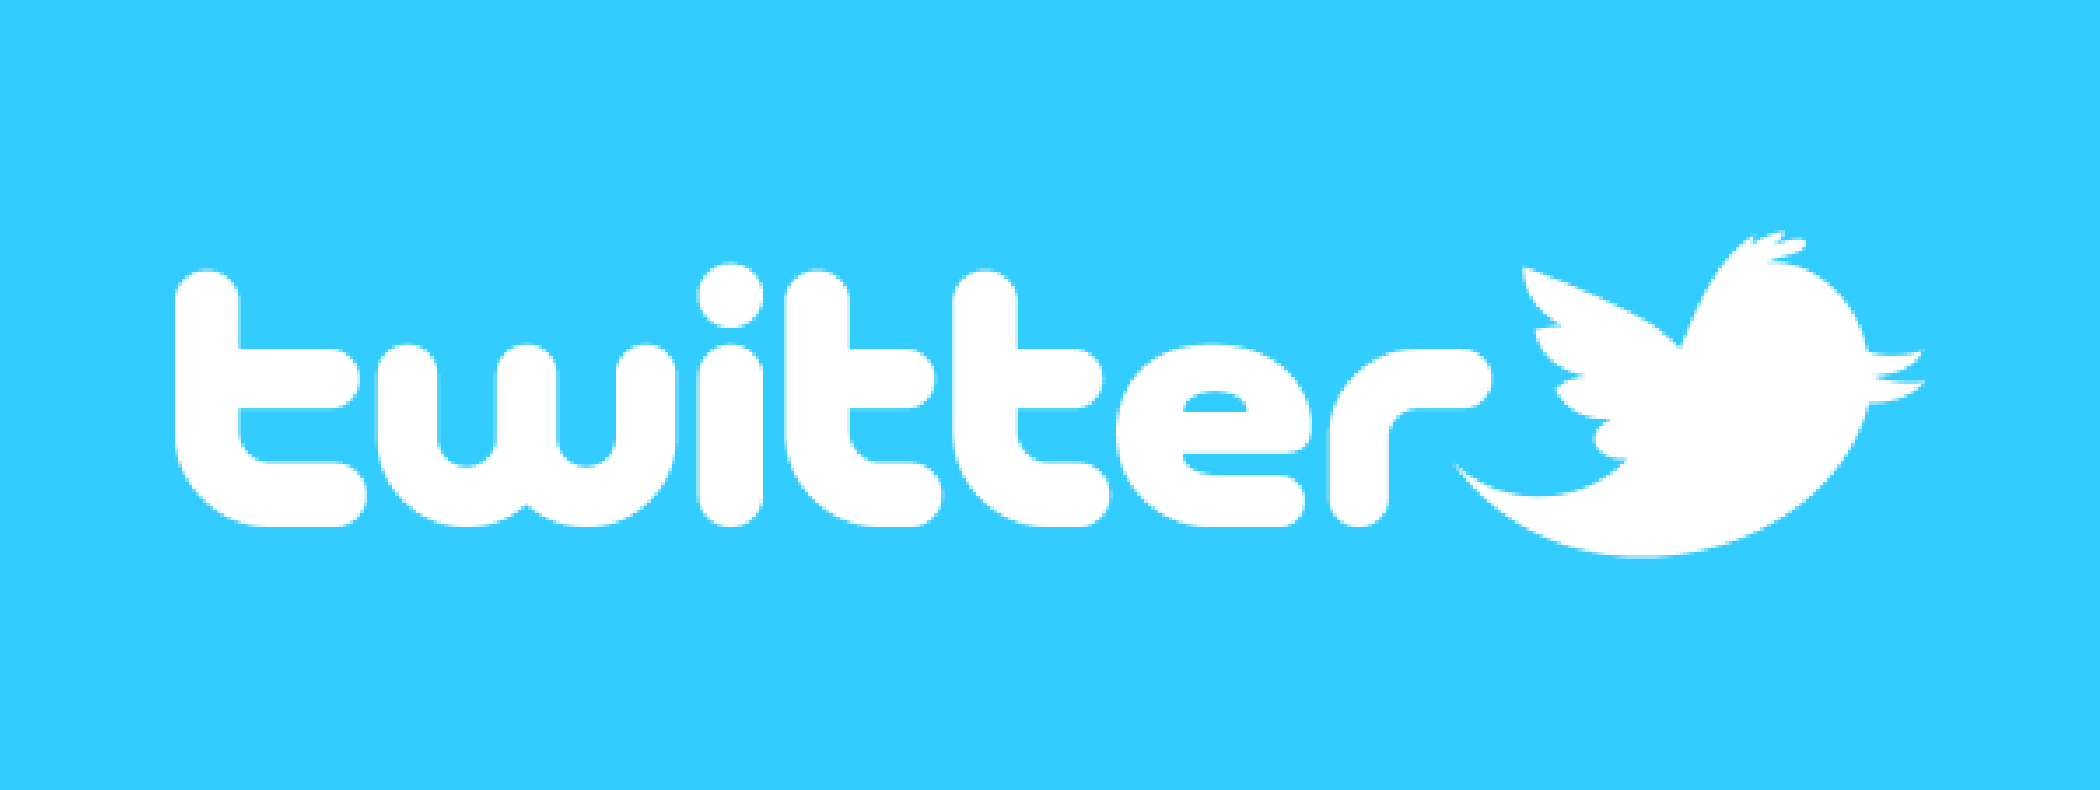 El responsable de Twitter pide disculpas a mujeres víctimas de abuso por red